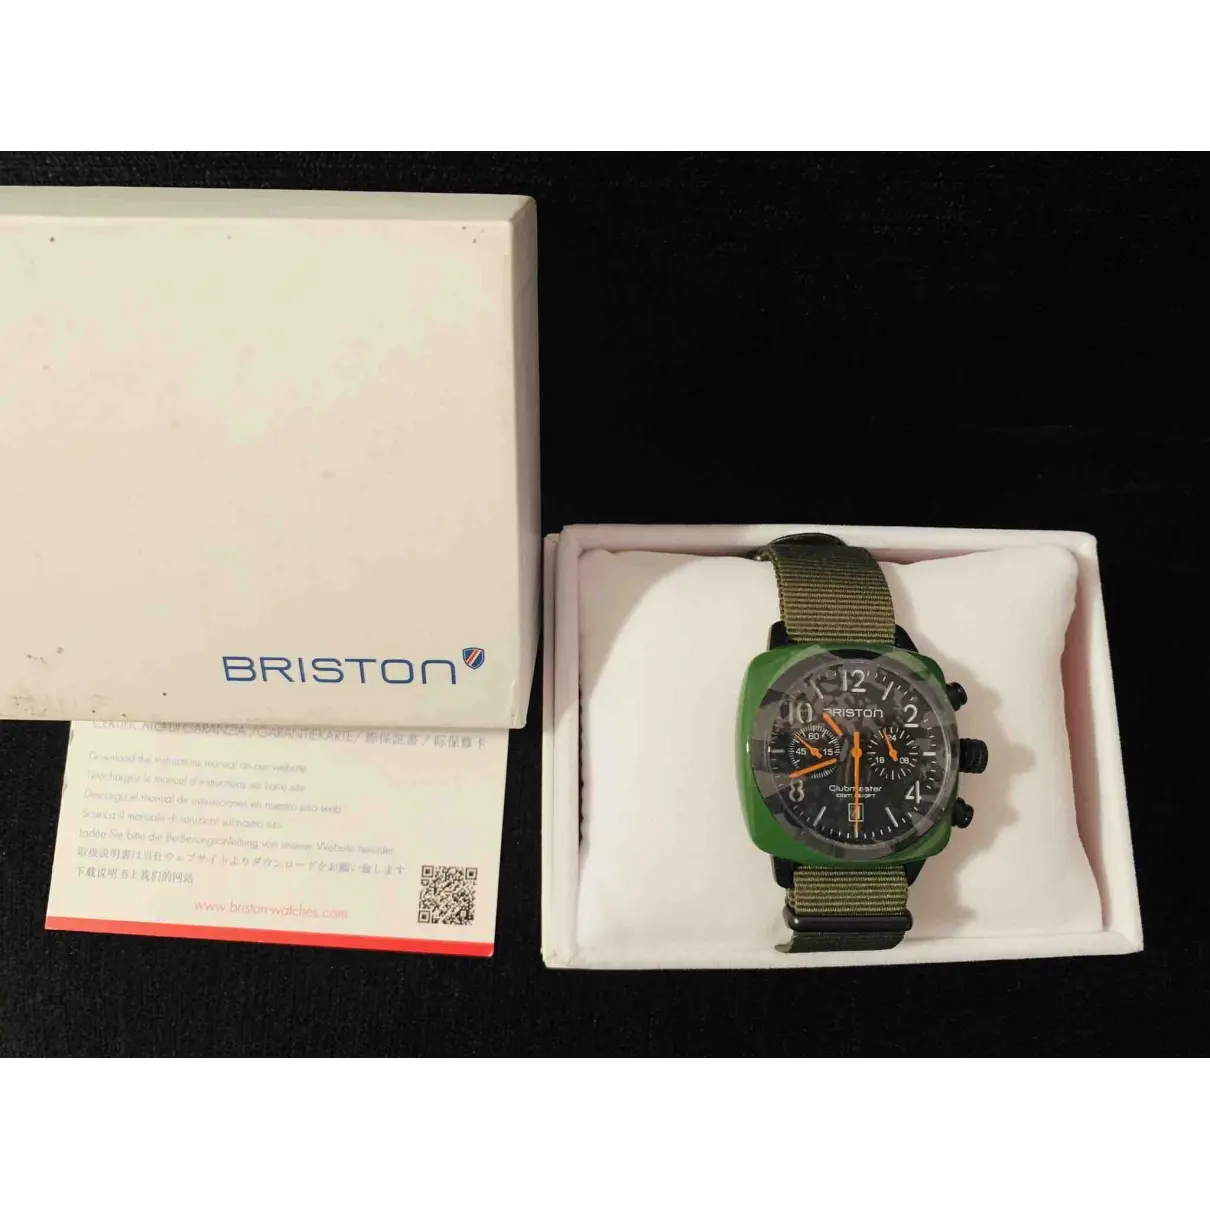 Buy Briston Watch online